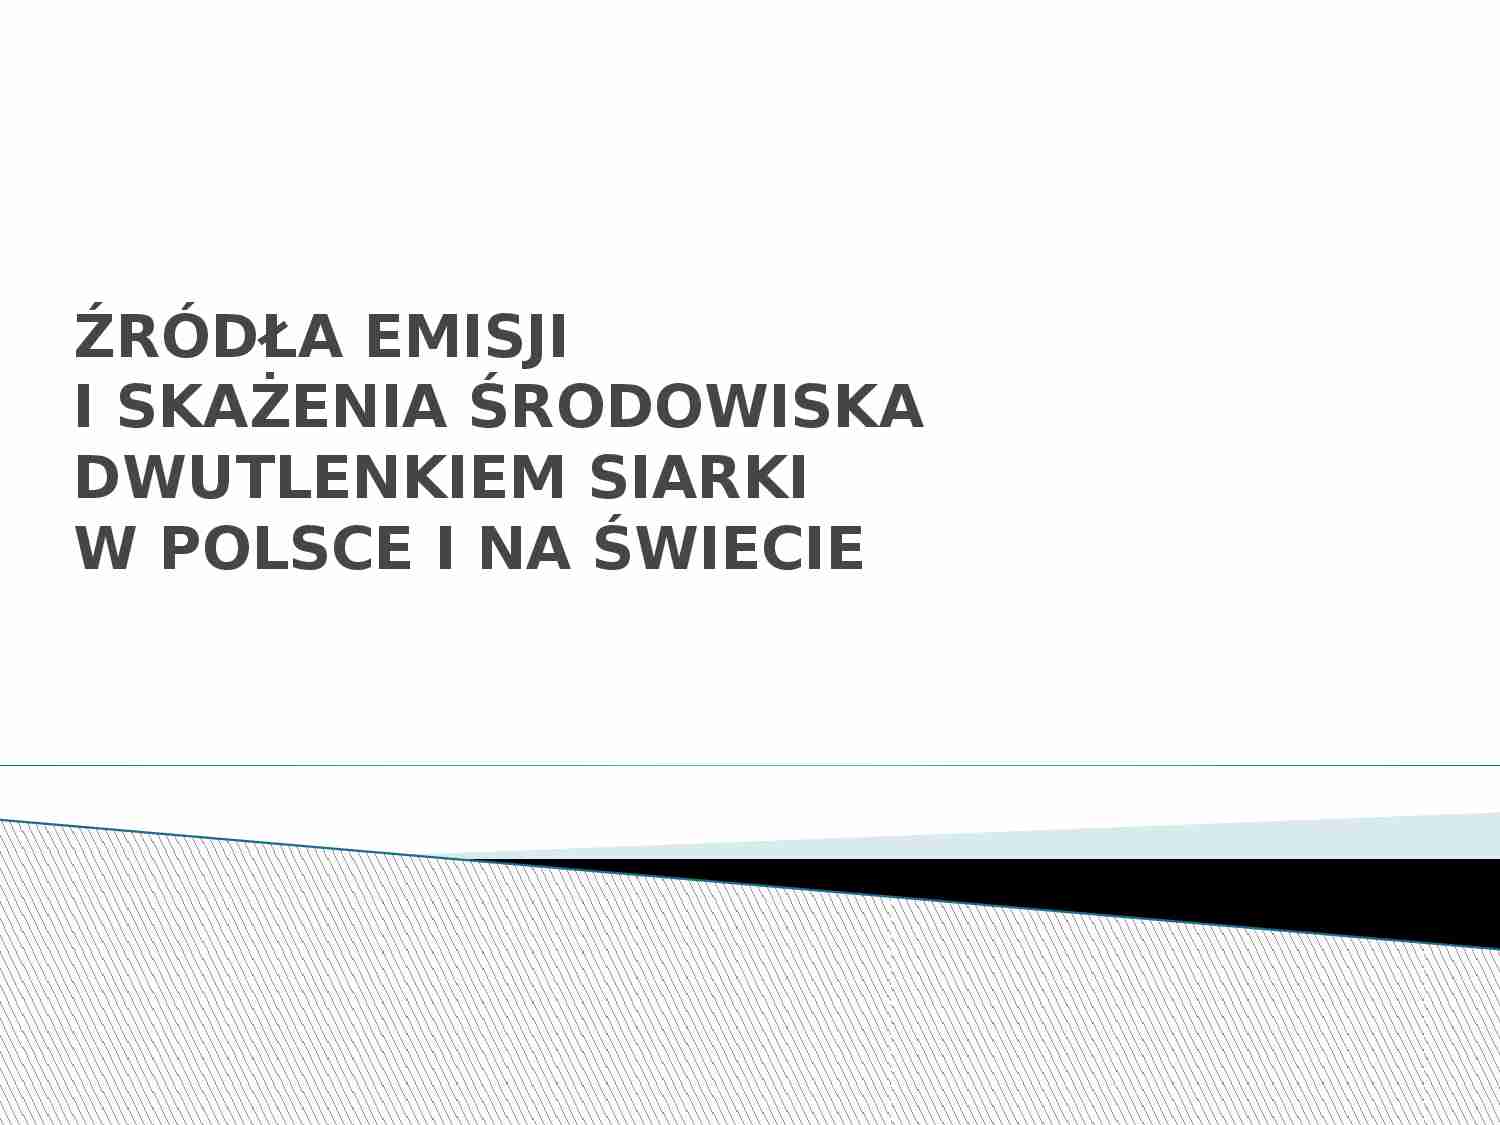 Źródła emisji i skażenia środowiska dwutlenkiem siarki w Polsce i na świecie - strona 1